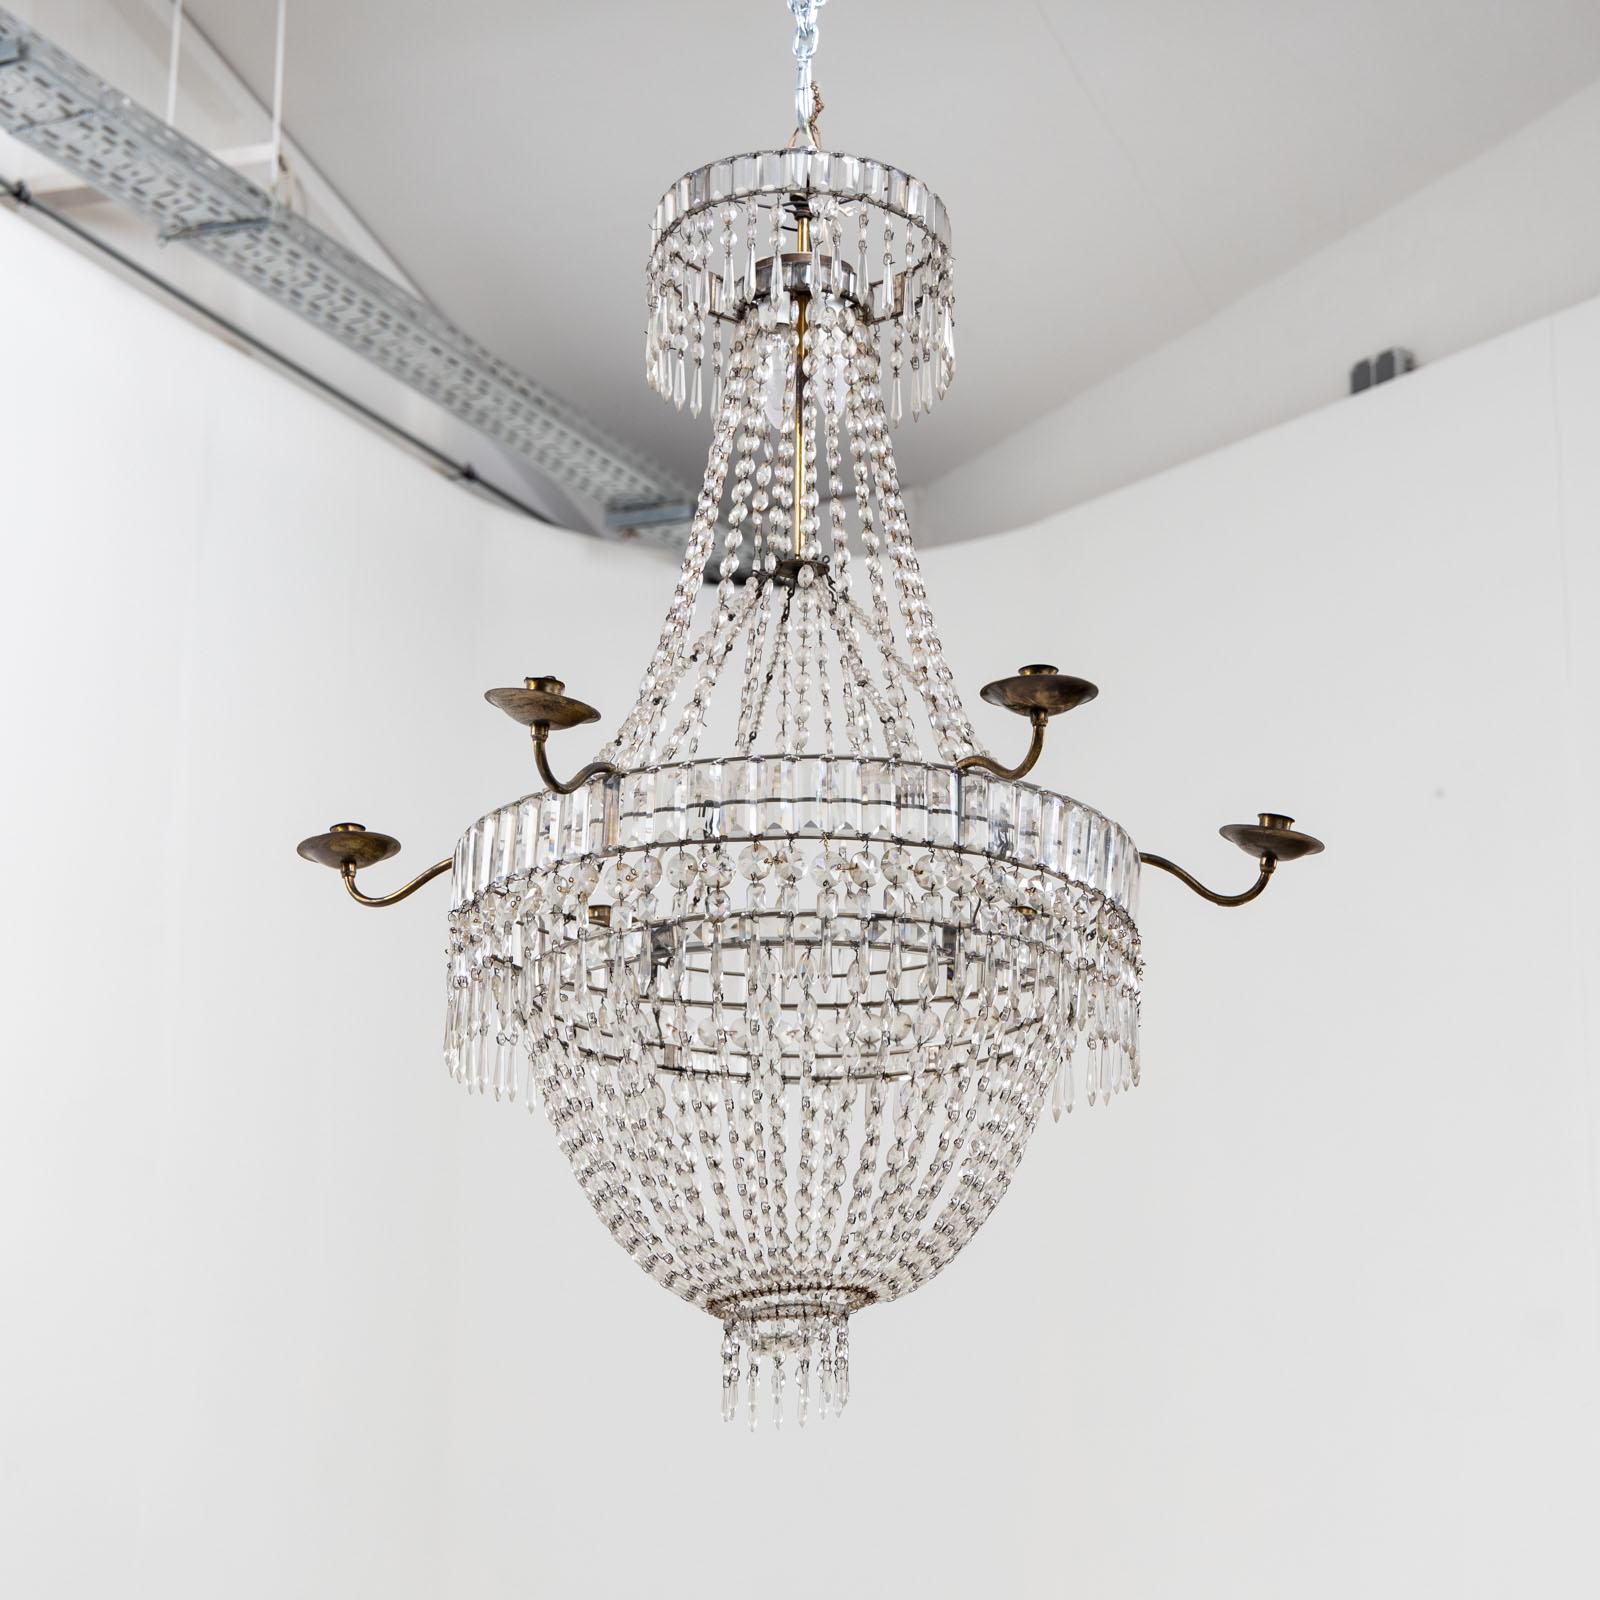 Grand lustre de plafond avec six chandeliers en laiton. La suspension de prismes de verre, de gouttes et de perles est guidée par deux arceaux et se termine par un panier avec des gouttes suspendues.